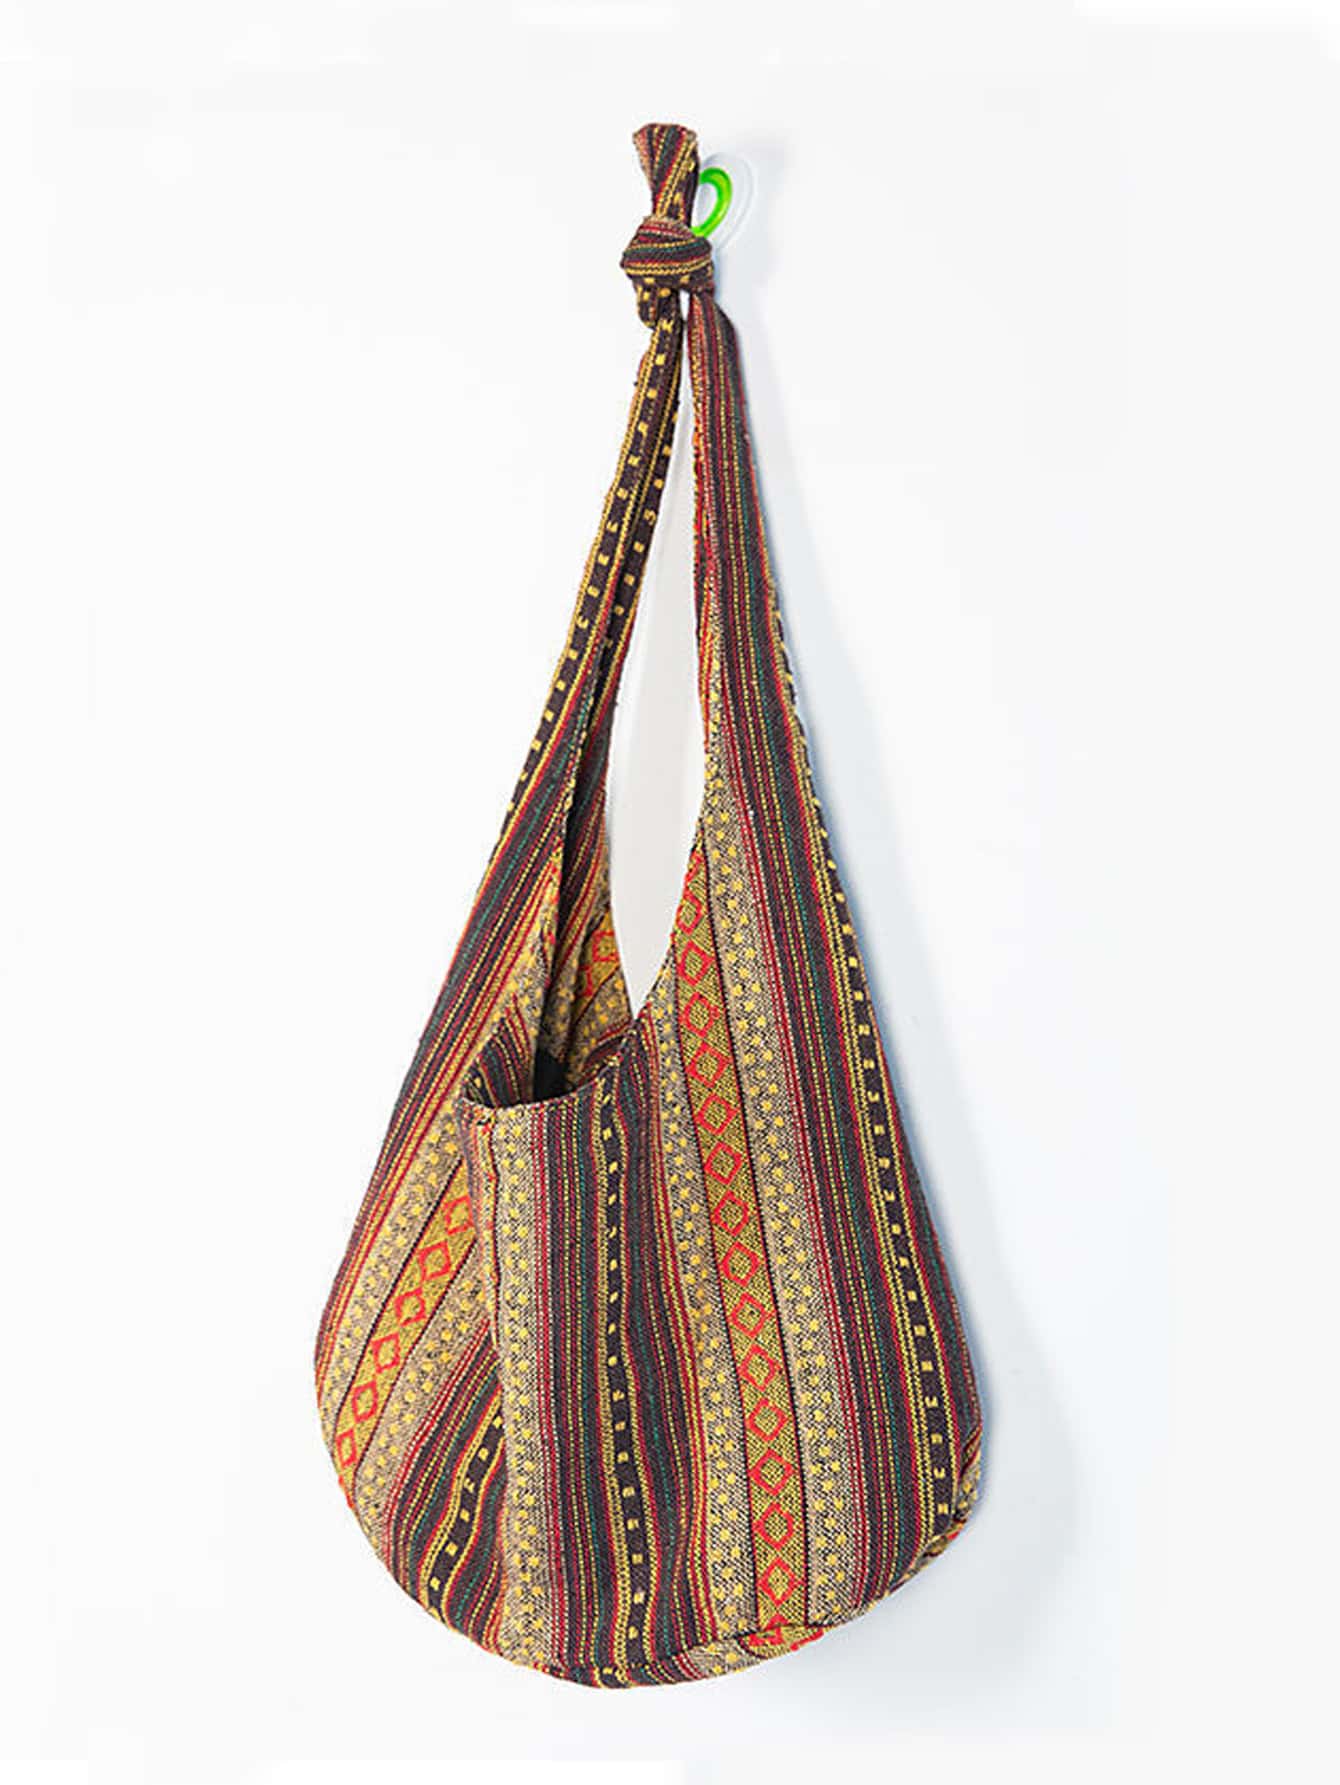 Женская сумка на плечо, коричневый холщовая сумка мешок популярного цвета в стиле ретро новинка 2021 осенняя модная женская сумка на плечо вместительная сумка универсальная